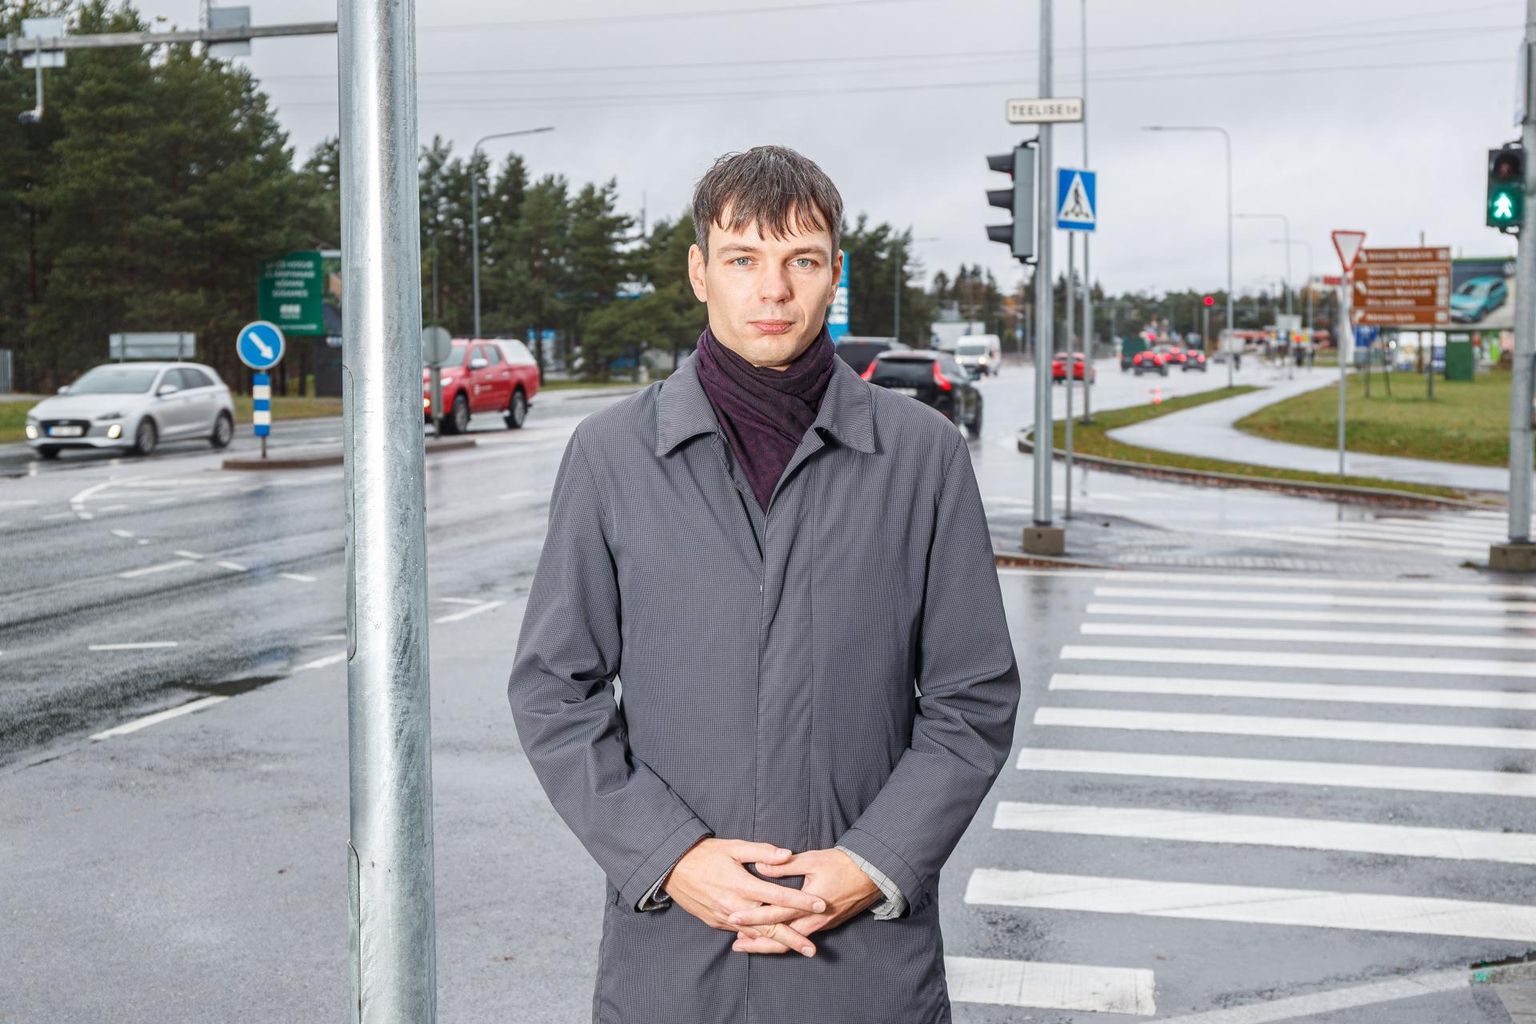 Tallinna keskkonna- ja kommunaalameti uus juht Jaan Tarmak. 